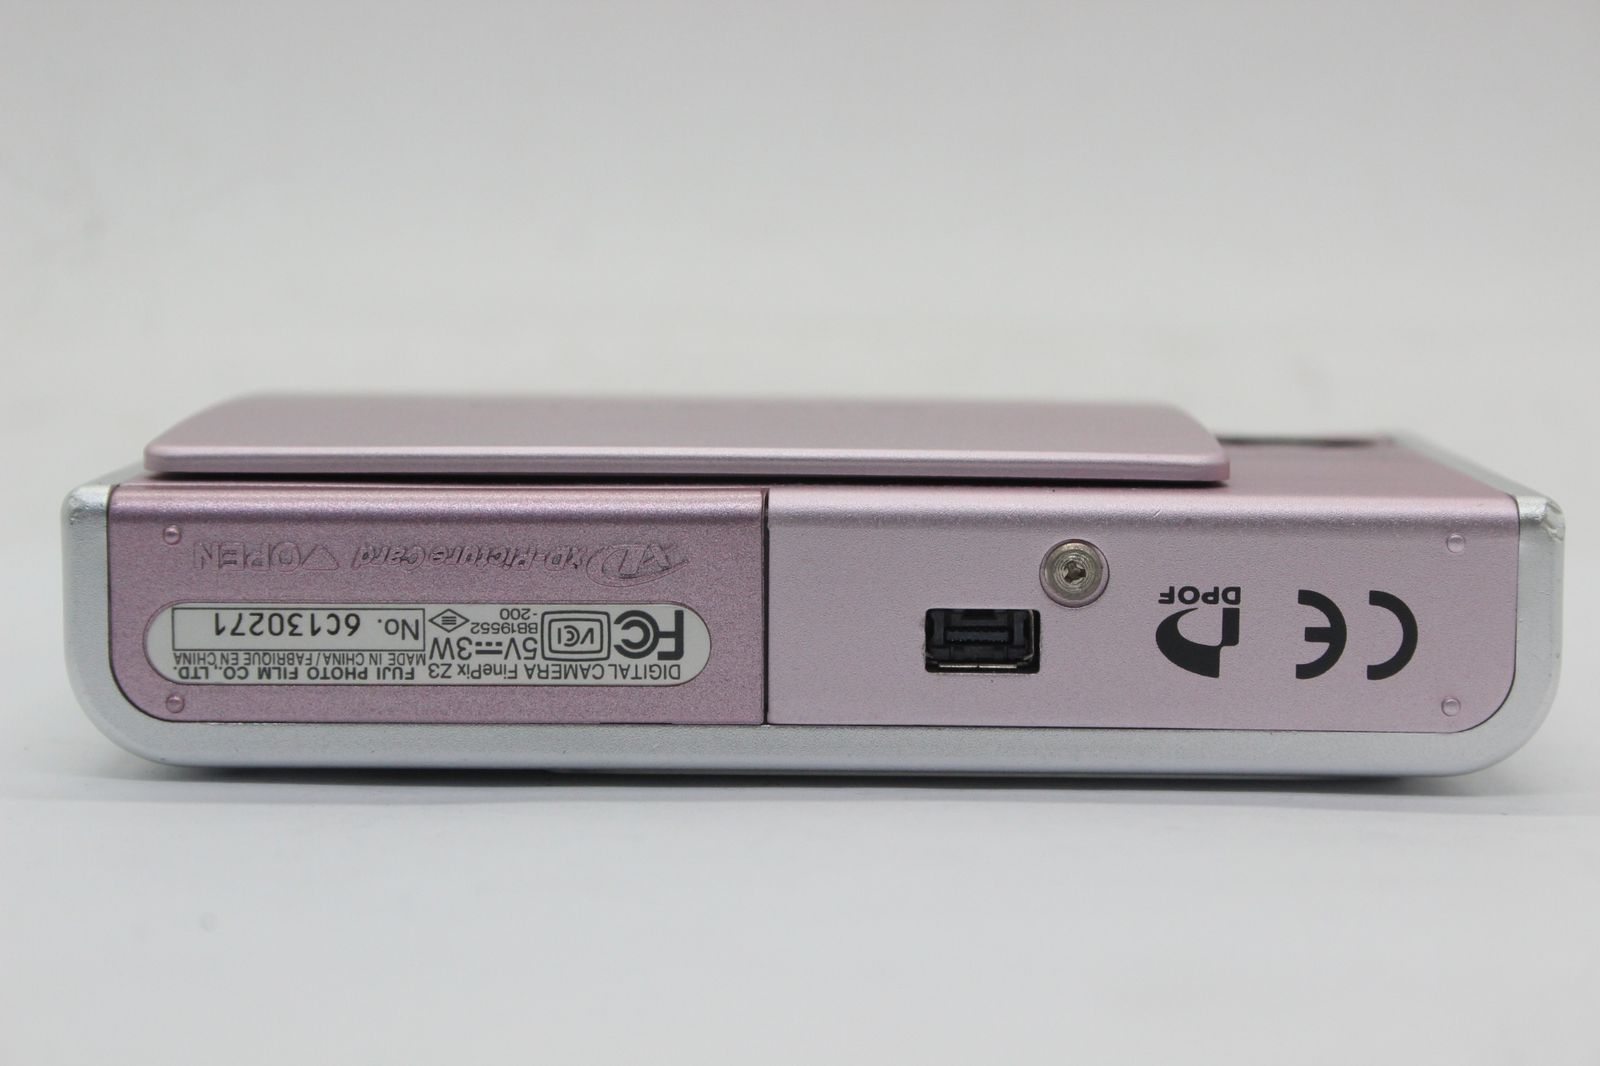 【返品保証】 フジフィルム Fujifilm Finepix Z3 ピンク 3x バッテリー チャージャー付き コンパクトデジタルカメラ s9386